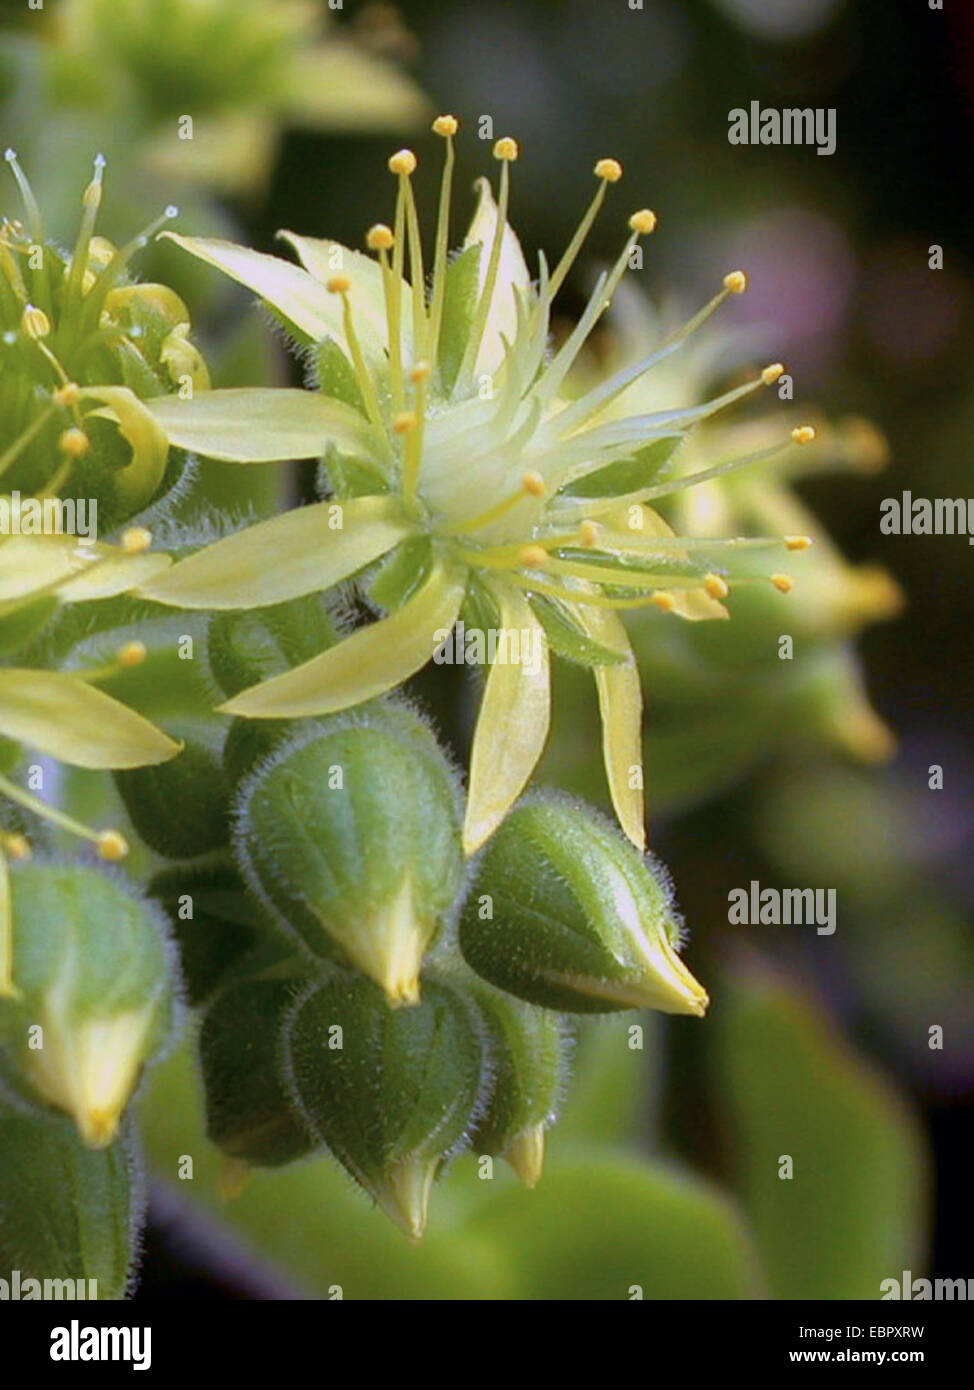 aeonium (Aeonium canariense), flower Stock Photo